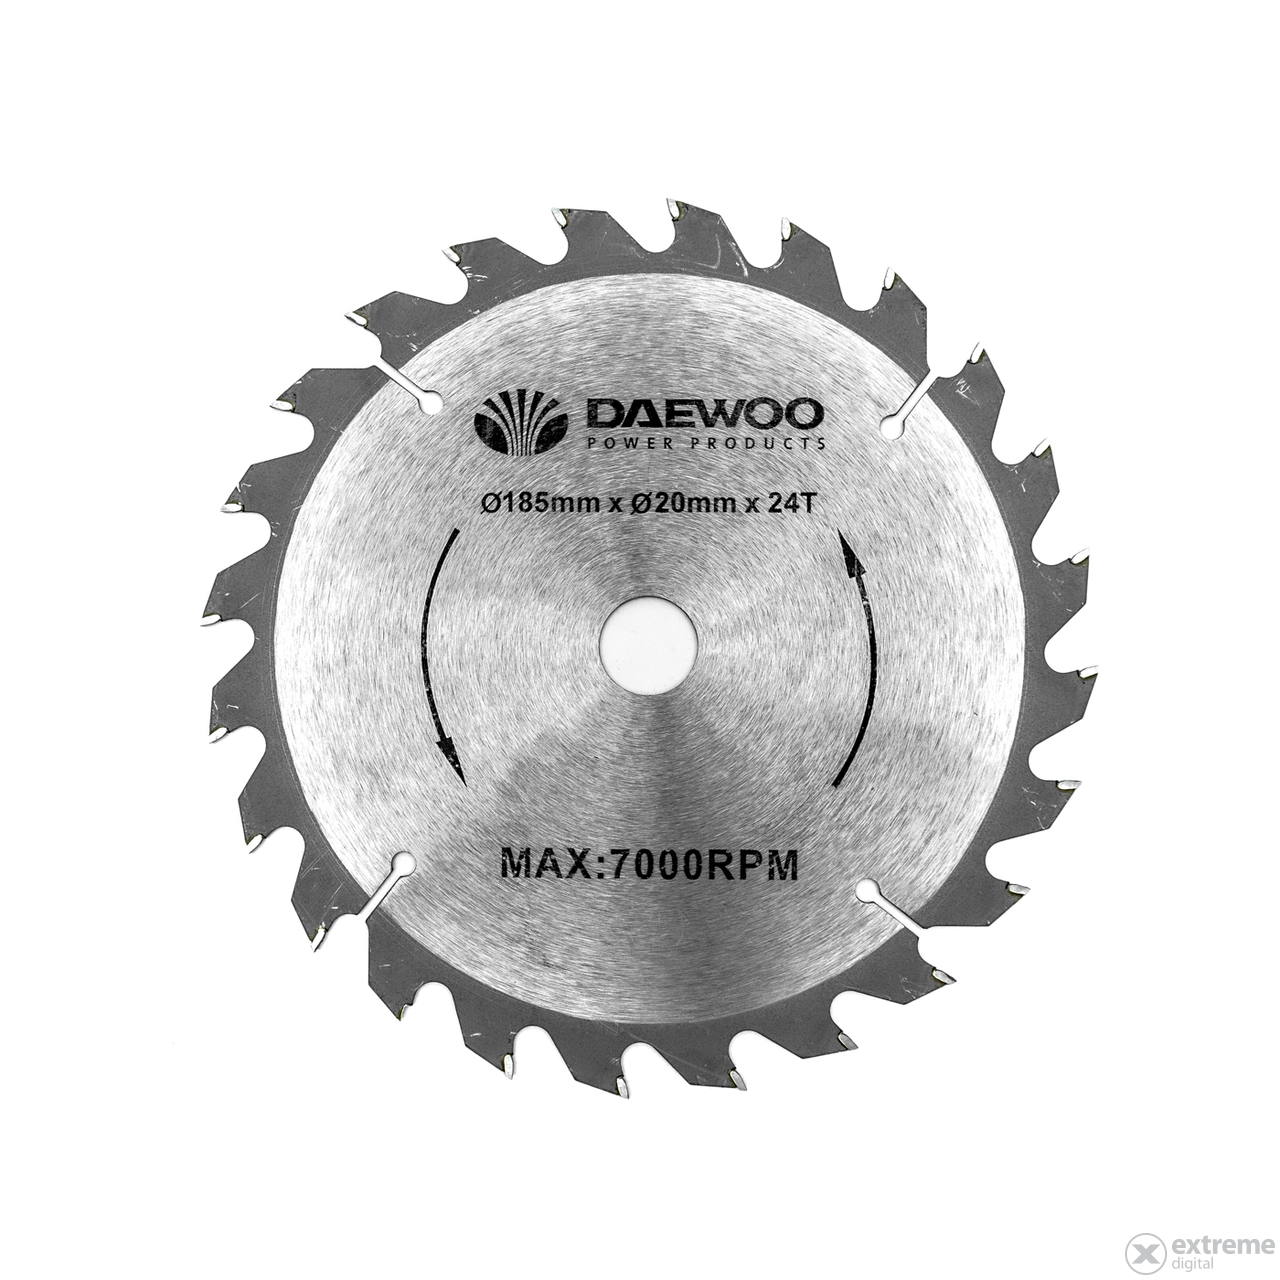 Daewoo DACS1400Y kružna pila, 1400 W